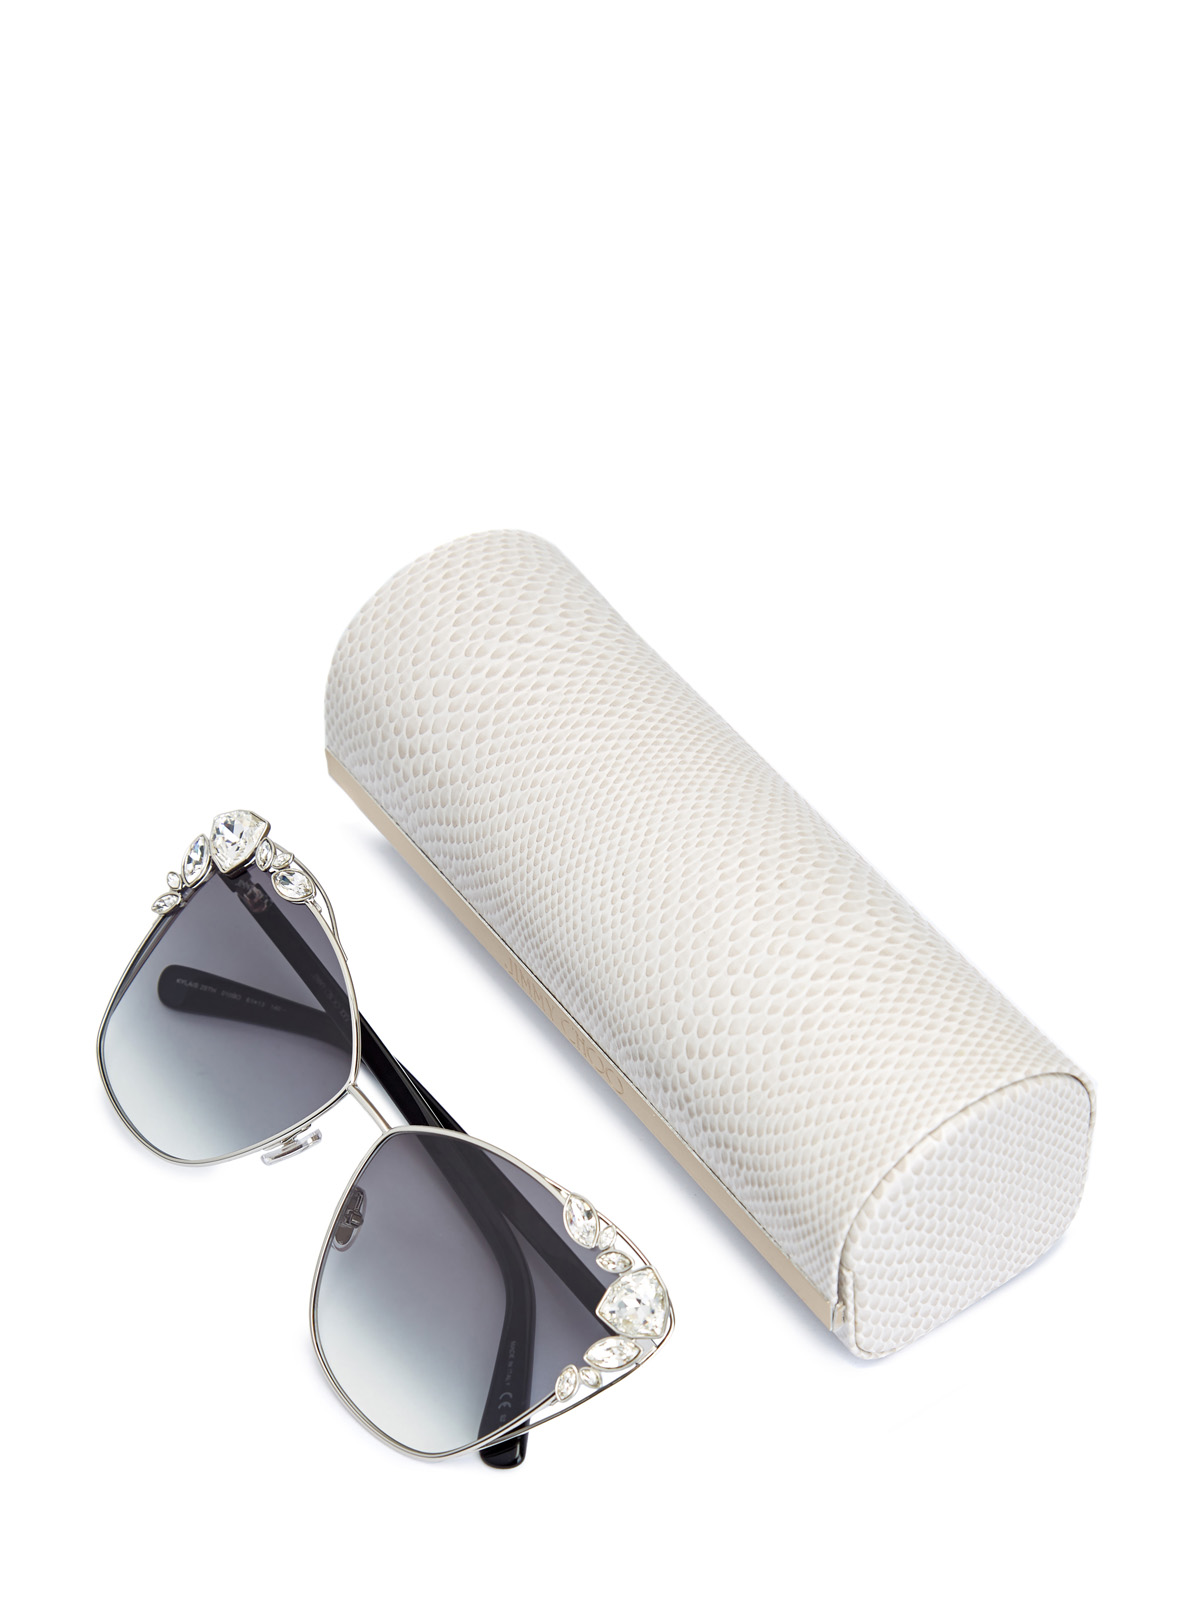 Солнцезащитные очки Kyla с кристаллами Swarovski JIMMY CHOO  (sunglasses) - фото 4